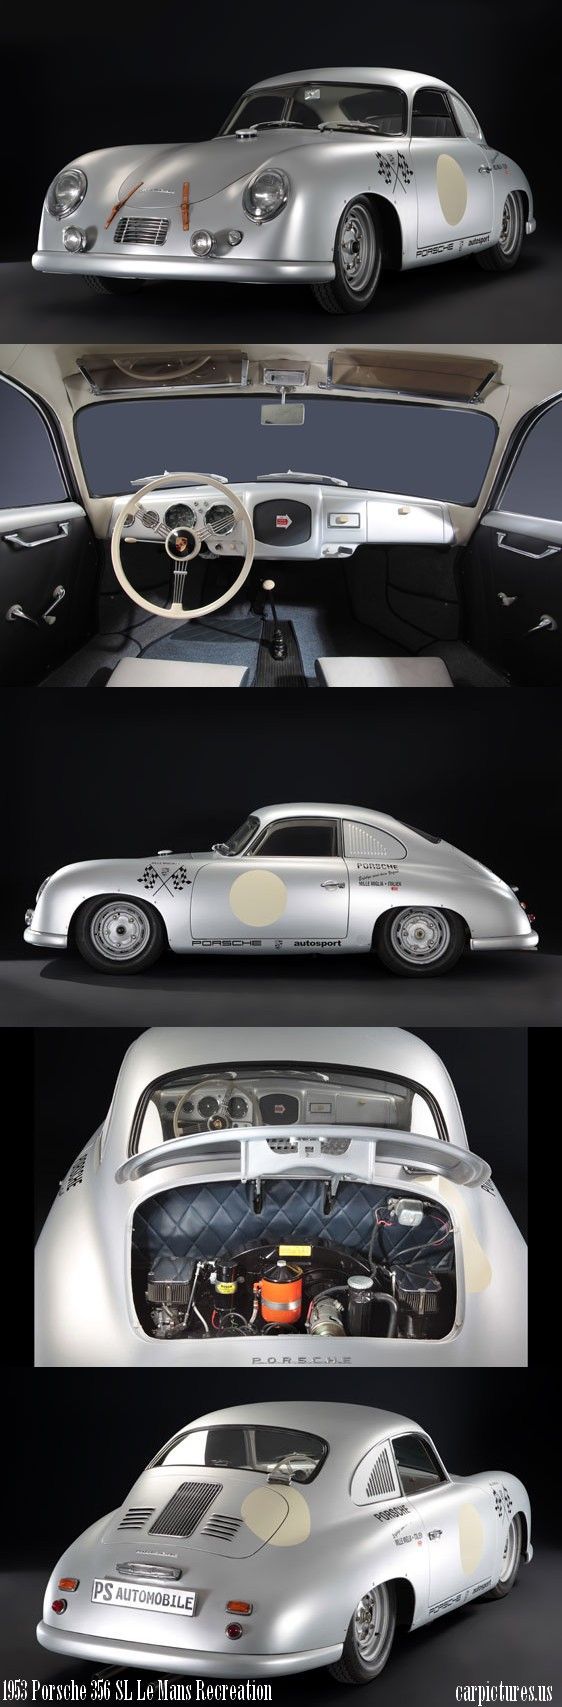 1953 Porsche 356 SL Le Mans - Porsche, Le mans, Auto, Car, Longpost